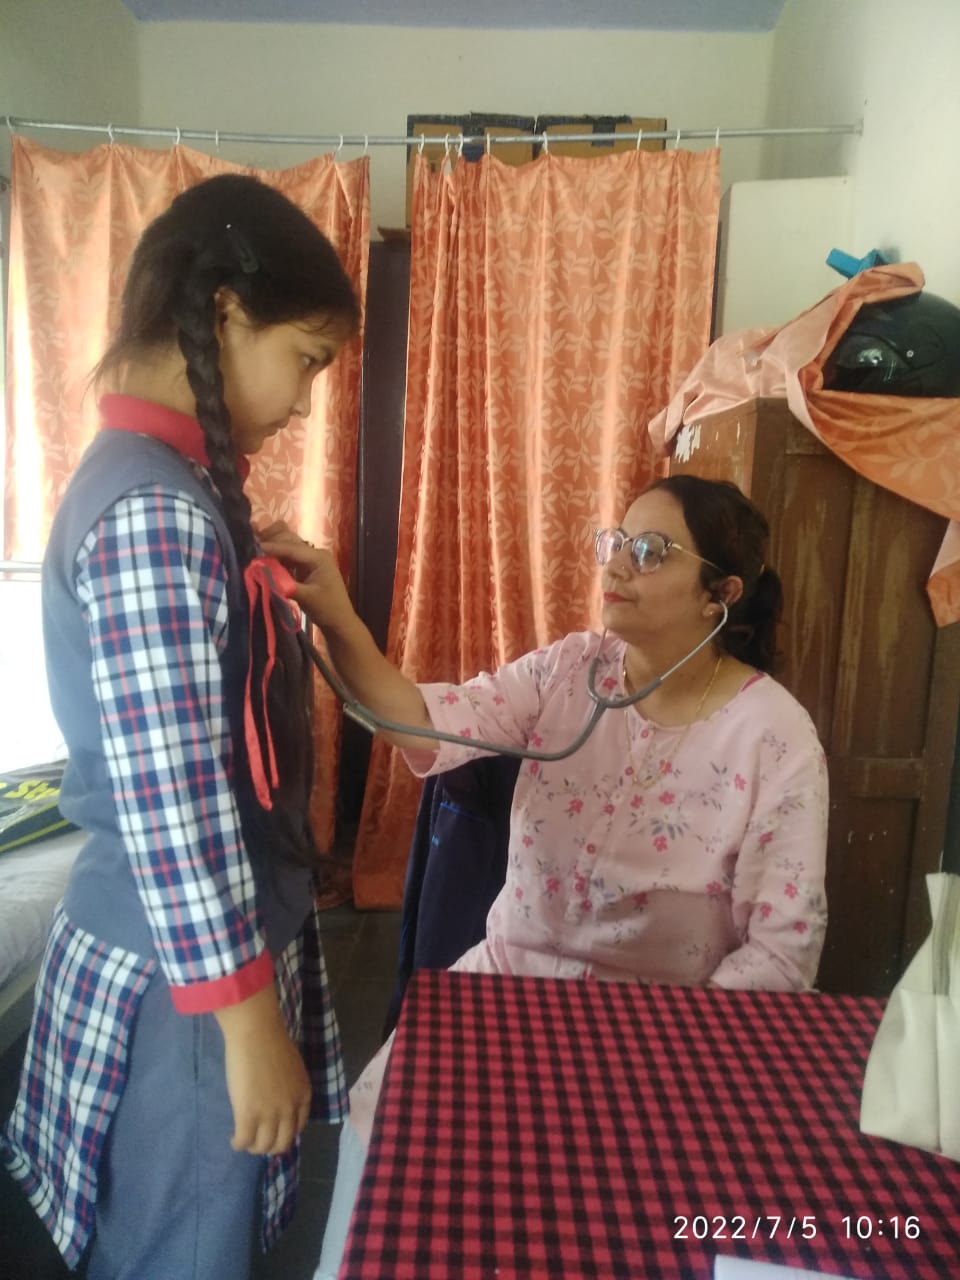 केंद्रीय विद्यालय रानीखेत में राष्ट्रीय बाल स्वास्थ्य कार्यक्रम शिविर में हुई विद्यार्थियों के स्वास्थ्य की जांच